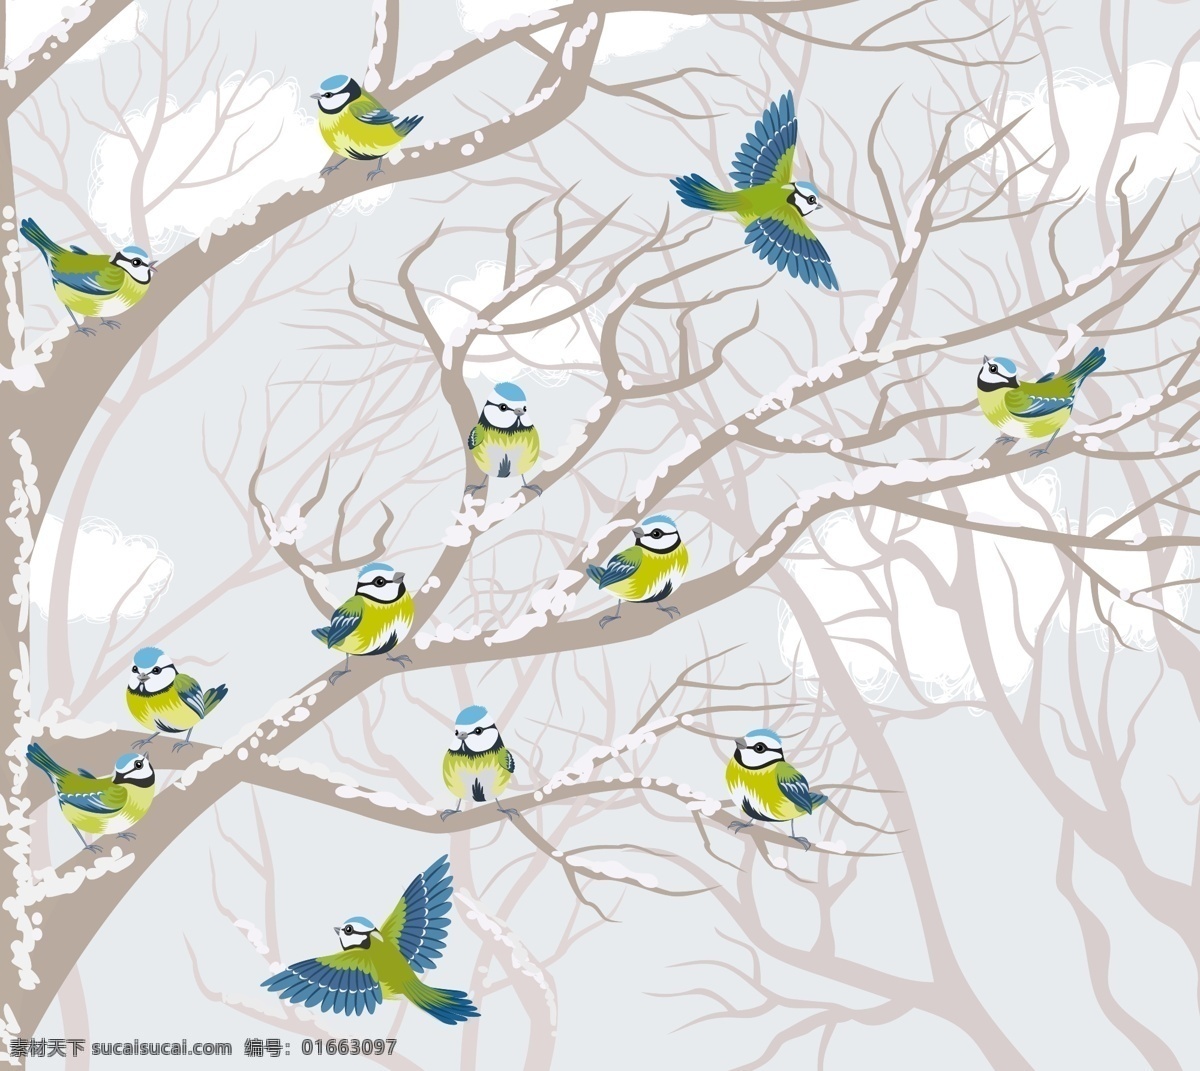 花鸟 背景 图 图案 花鸟图 模板 设计稿 树枝 水彩画 素材元素 小鸟 源文件 矢量图